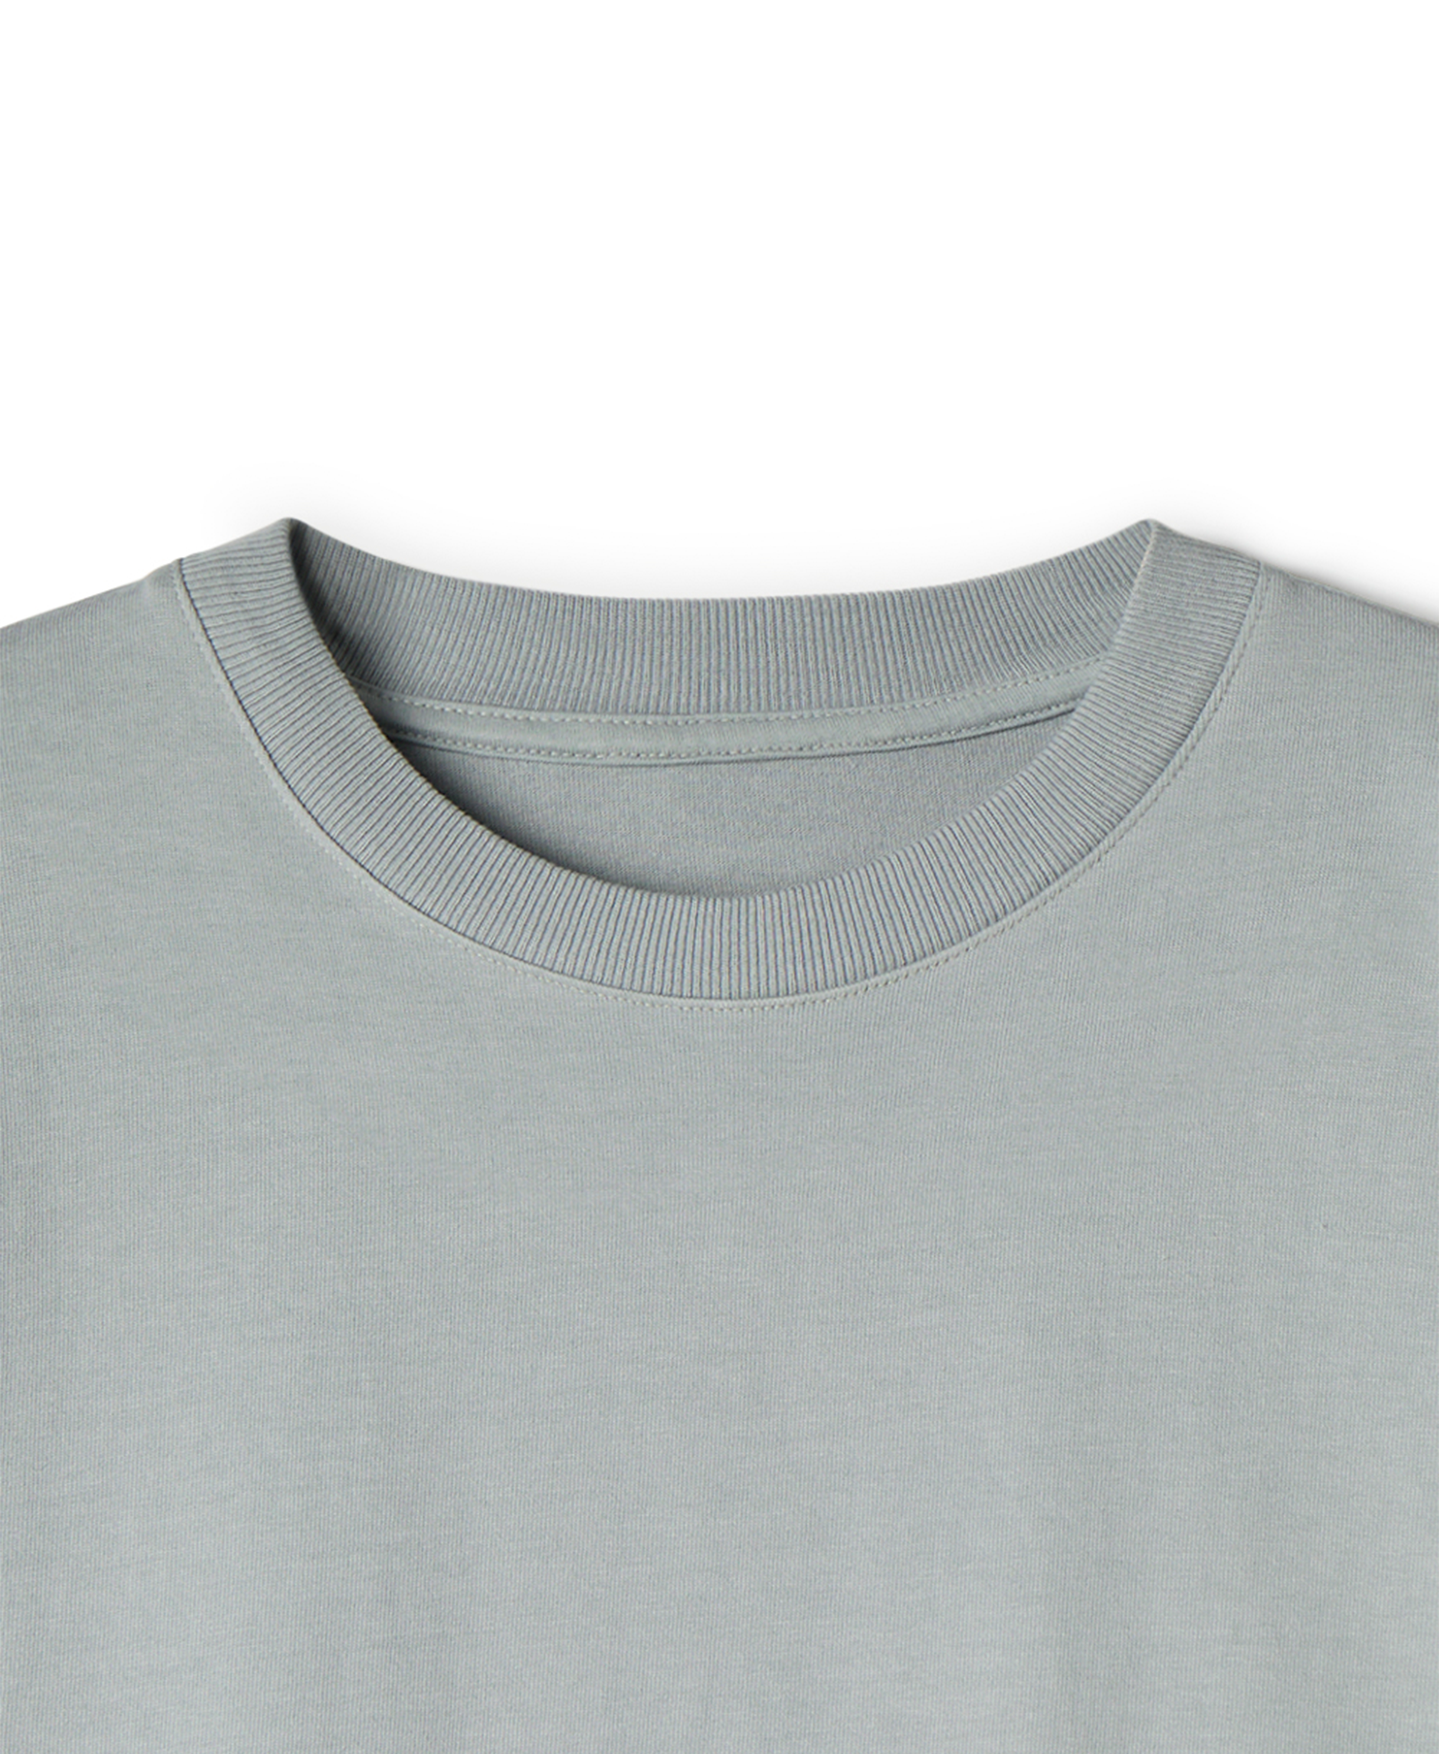 300 GSM 'Neutral Gray' T-Shirt